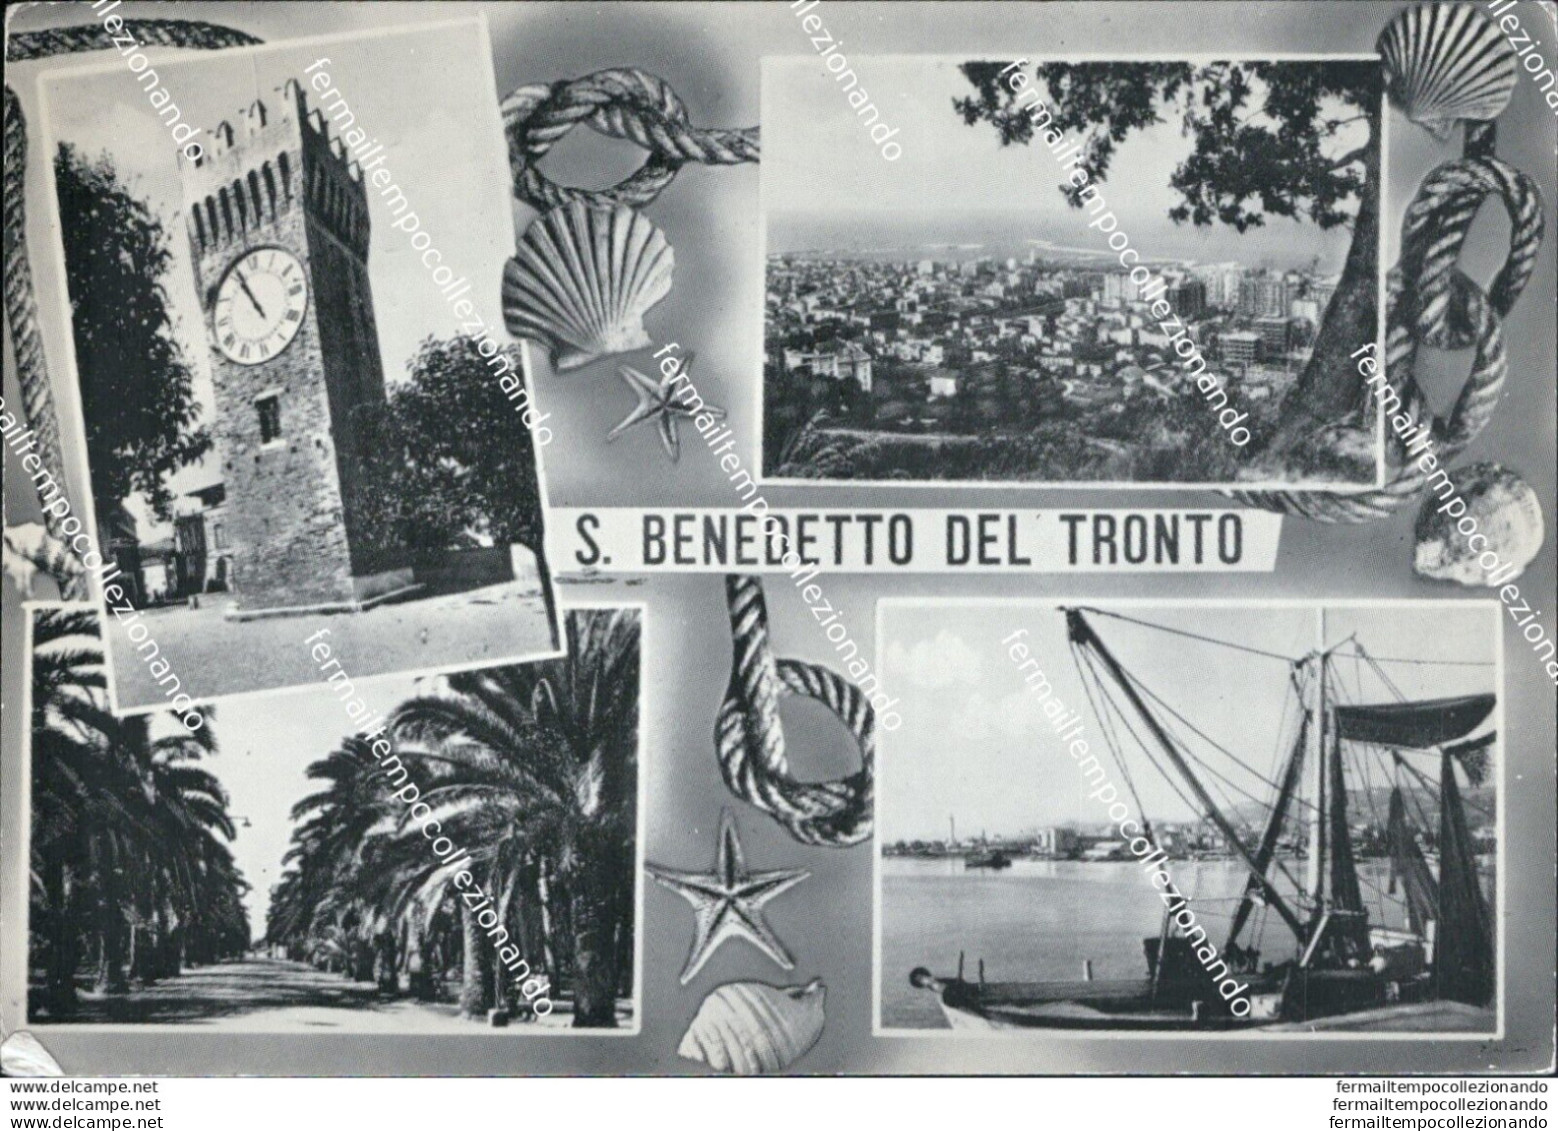 At418 Cartolina S.bendetto Del Tronto Provincia Di Ascoli Piceno - Ascoli Piceno